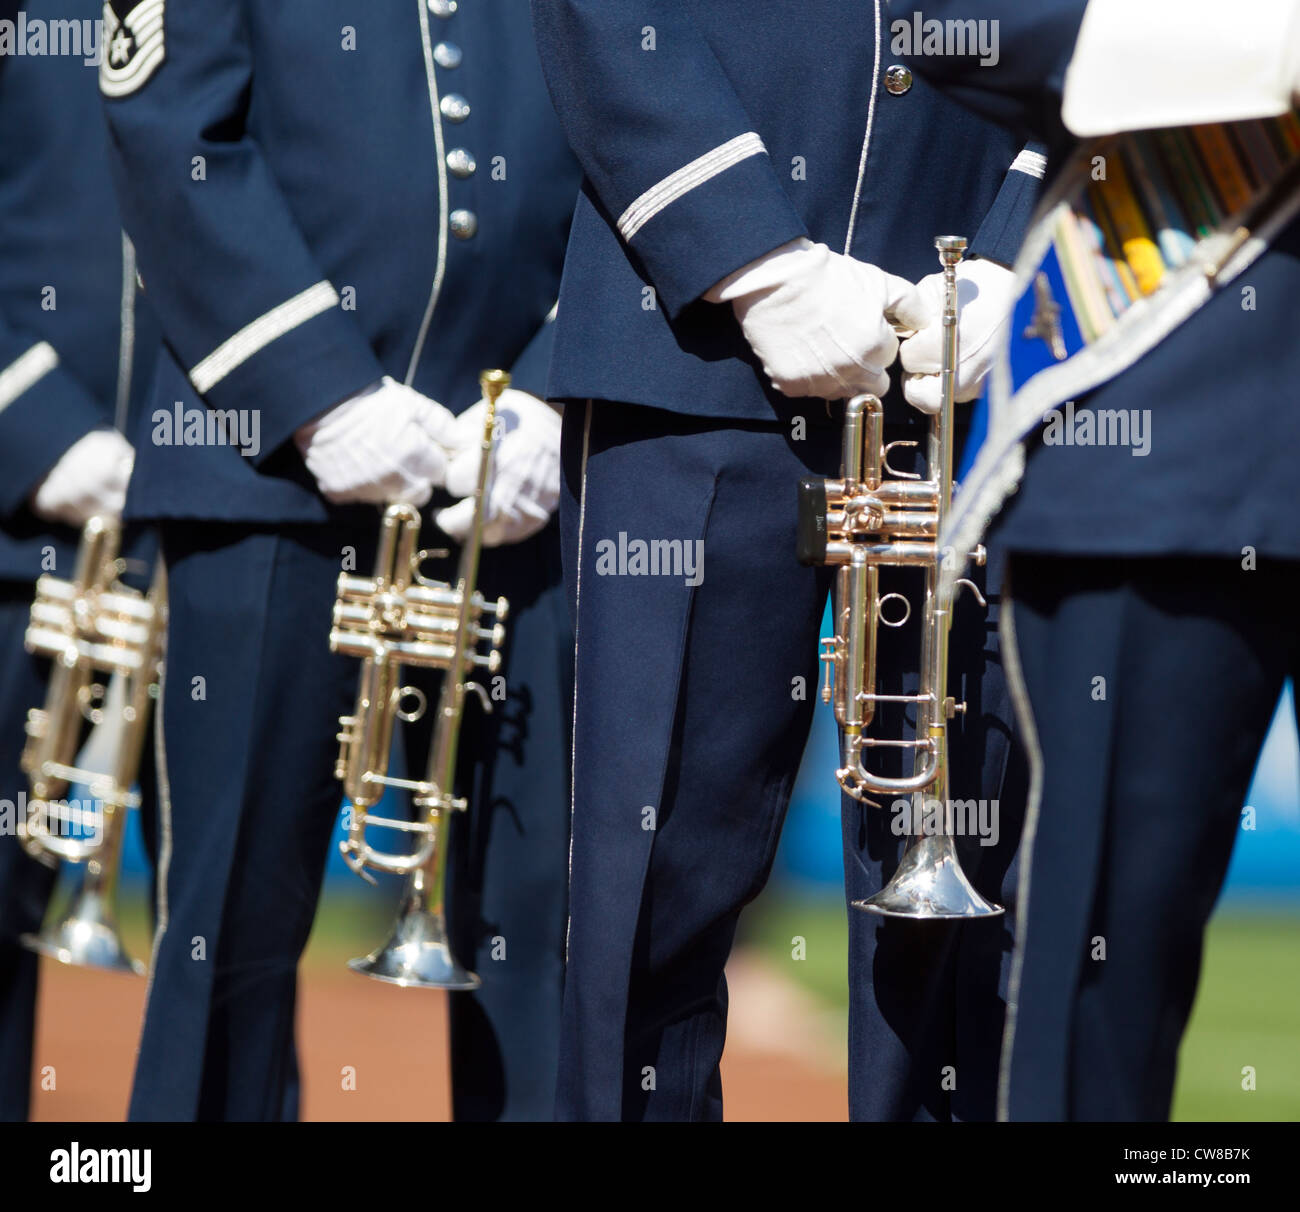 Die United States Air Force Band vor einem Baseball-Spiel Stockfoto